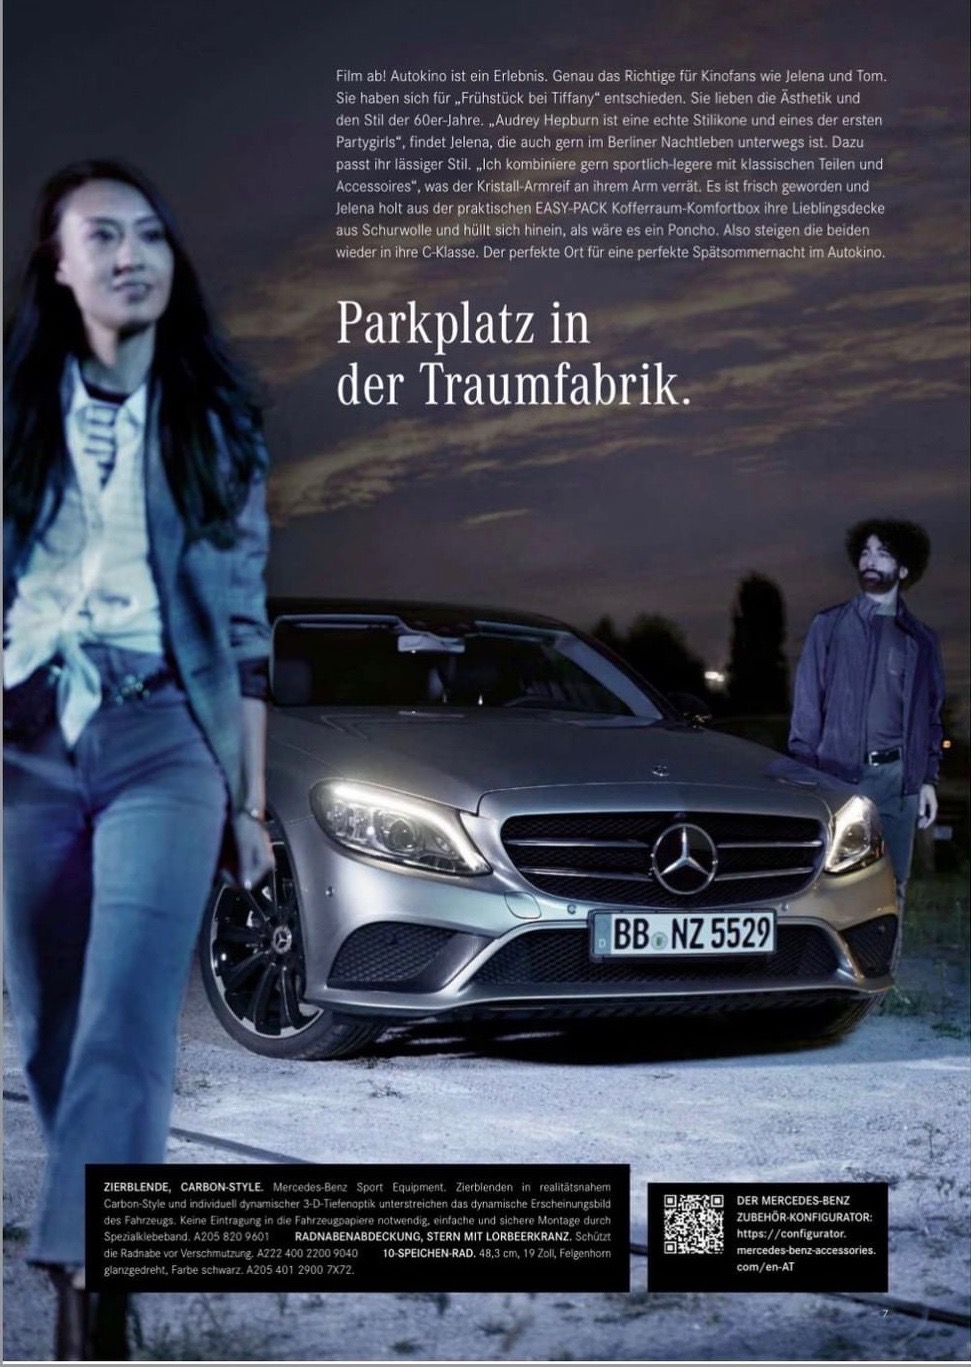 wiebke reich Mercedes Benz advertorial by Christoph Spranger